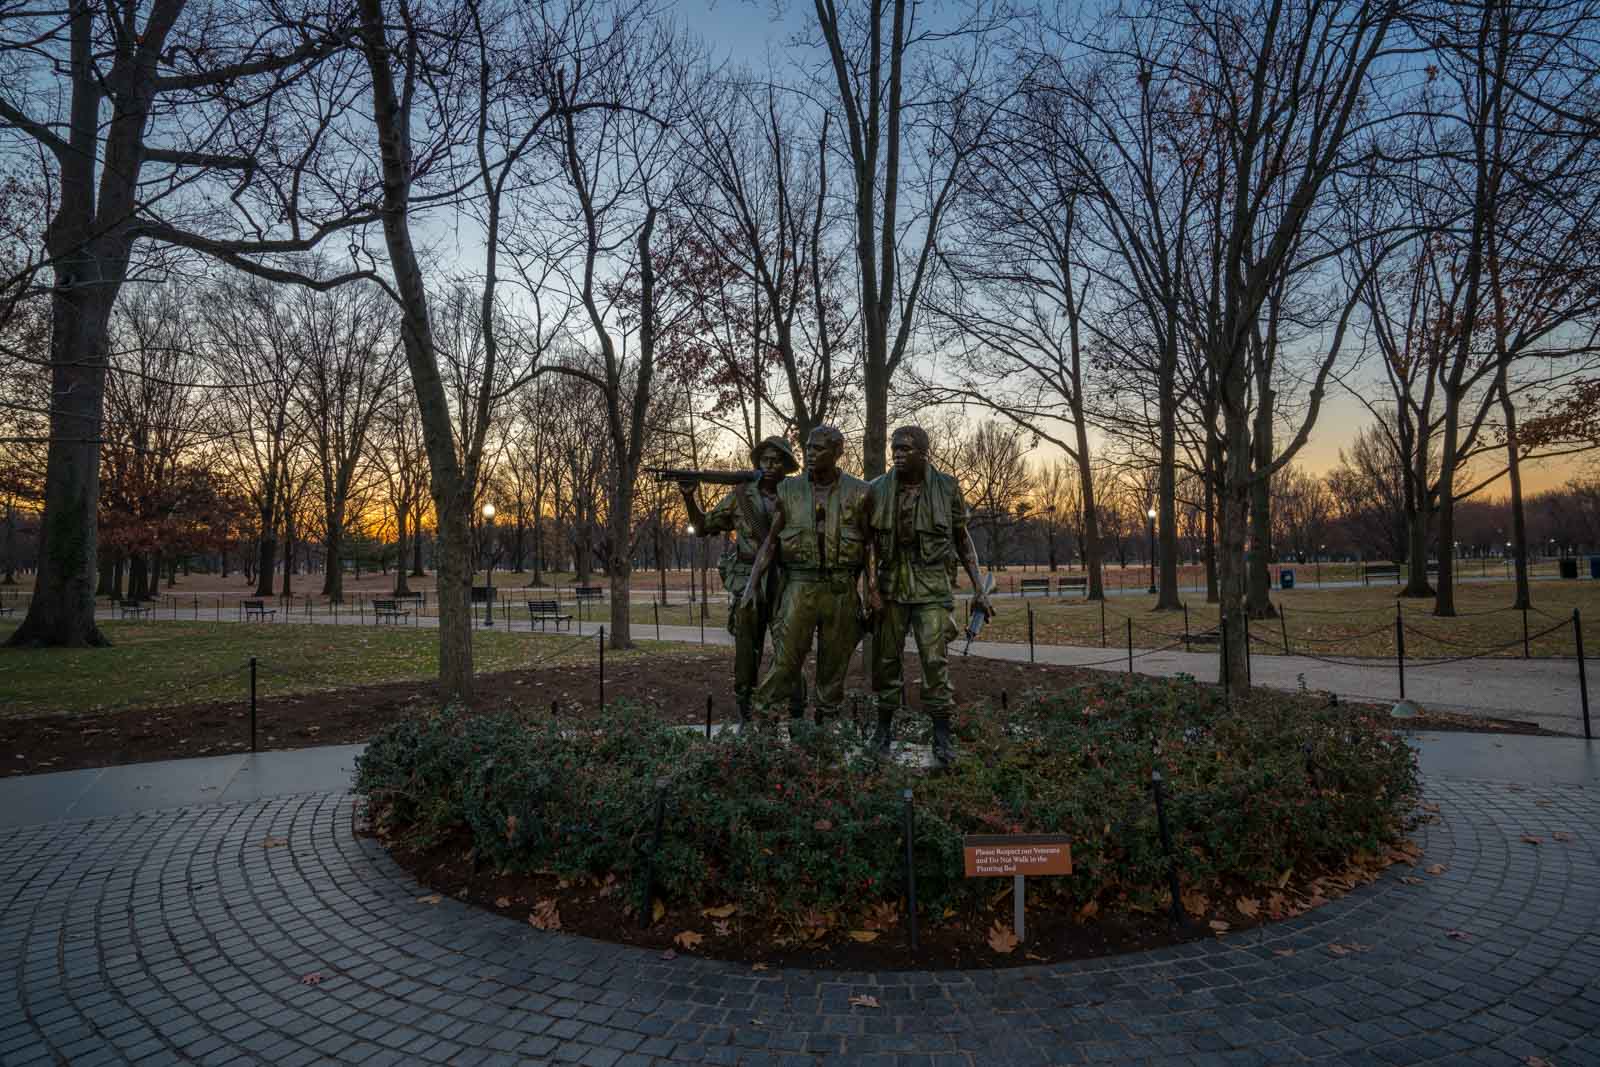 Korean War Veterans Memorial and the Vietnam War Memorial